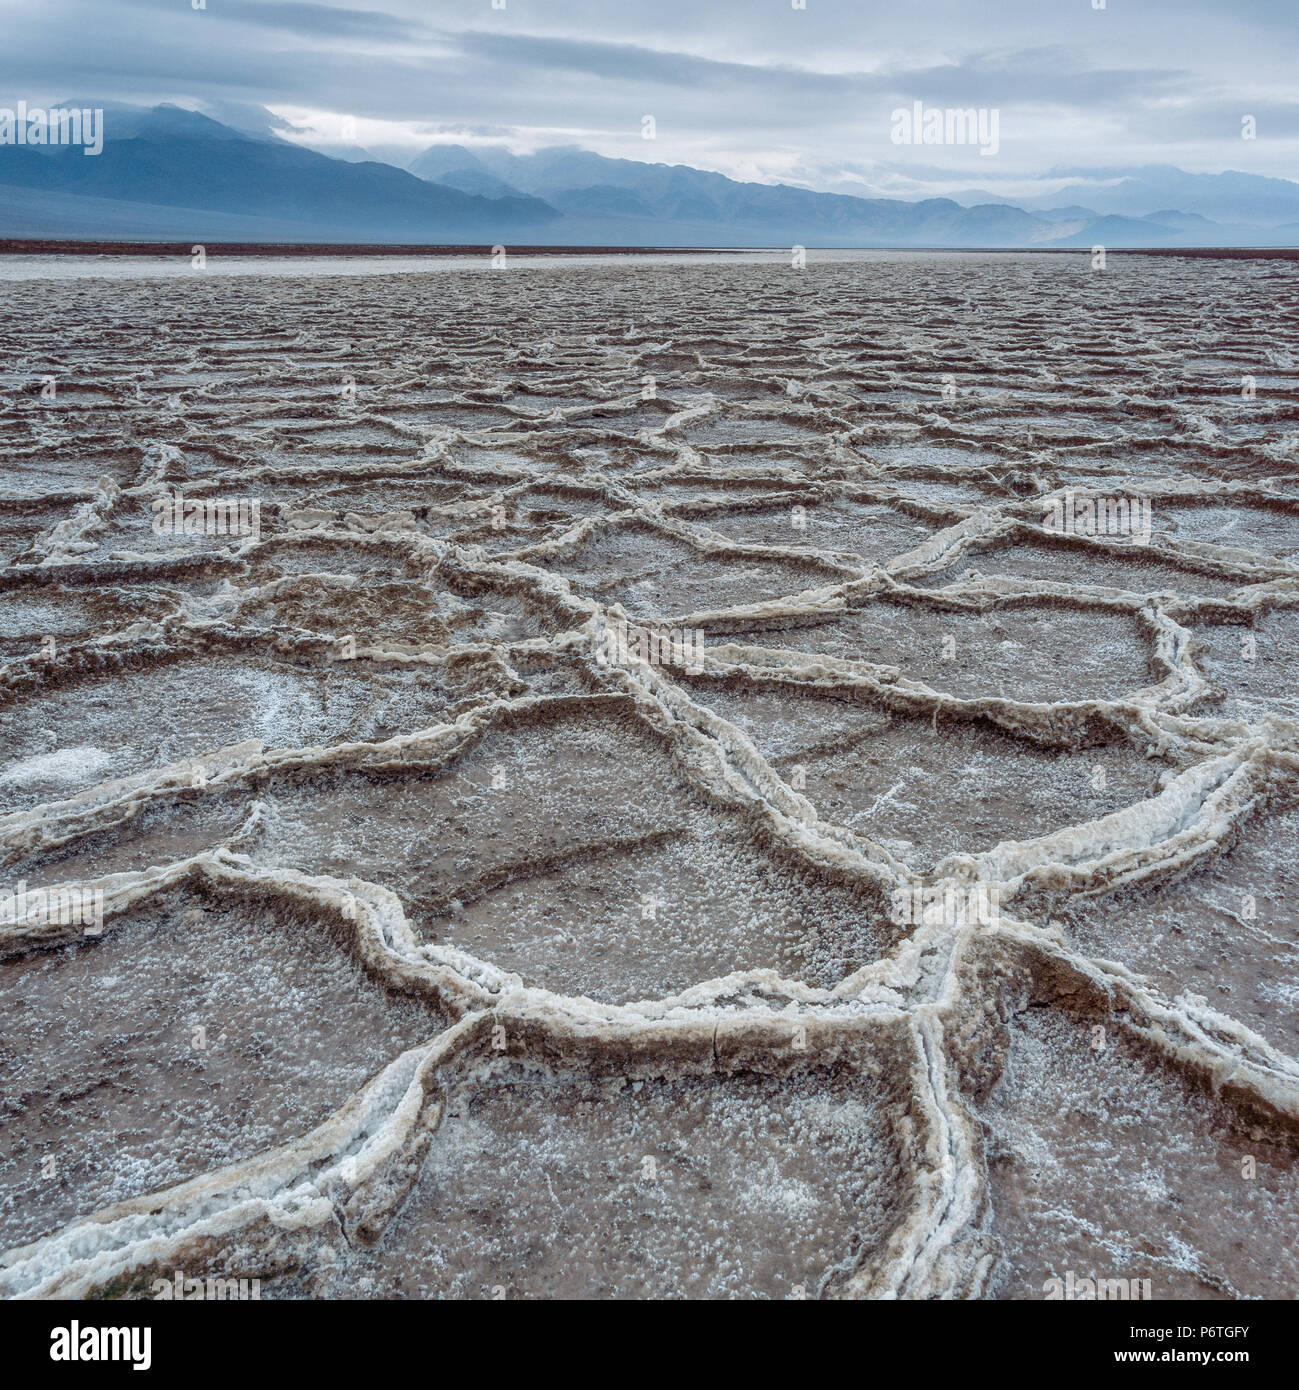 Rainfall, Salt Flats, Death Valley National Park, California Stock Photo -  Alamy